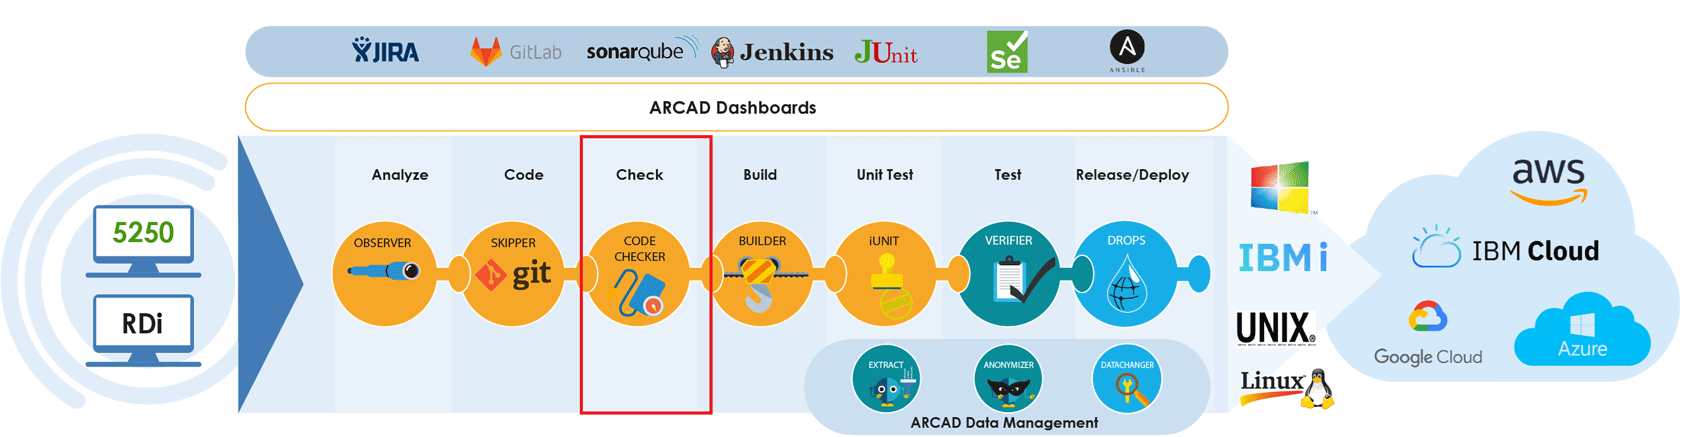 ARCAD Dashboard CodeChecker